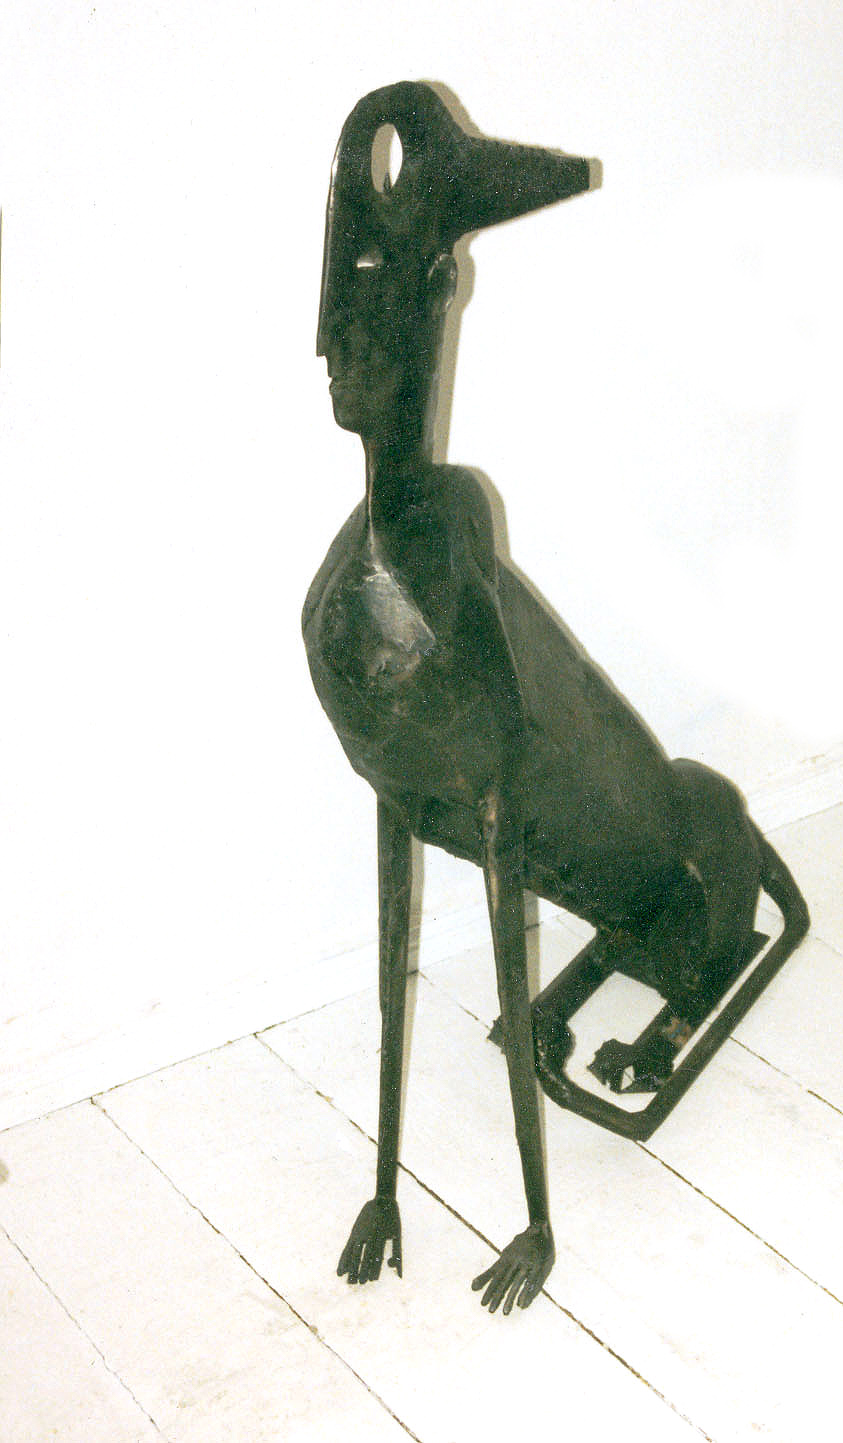 Андрей Асерьянц. "Сфинкс", 1994. Металл, высота 130 см. Фото из архива Андрея Асерьянца